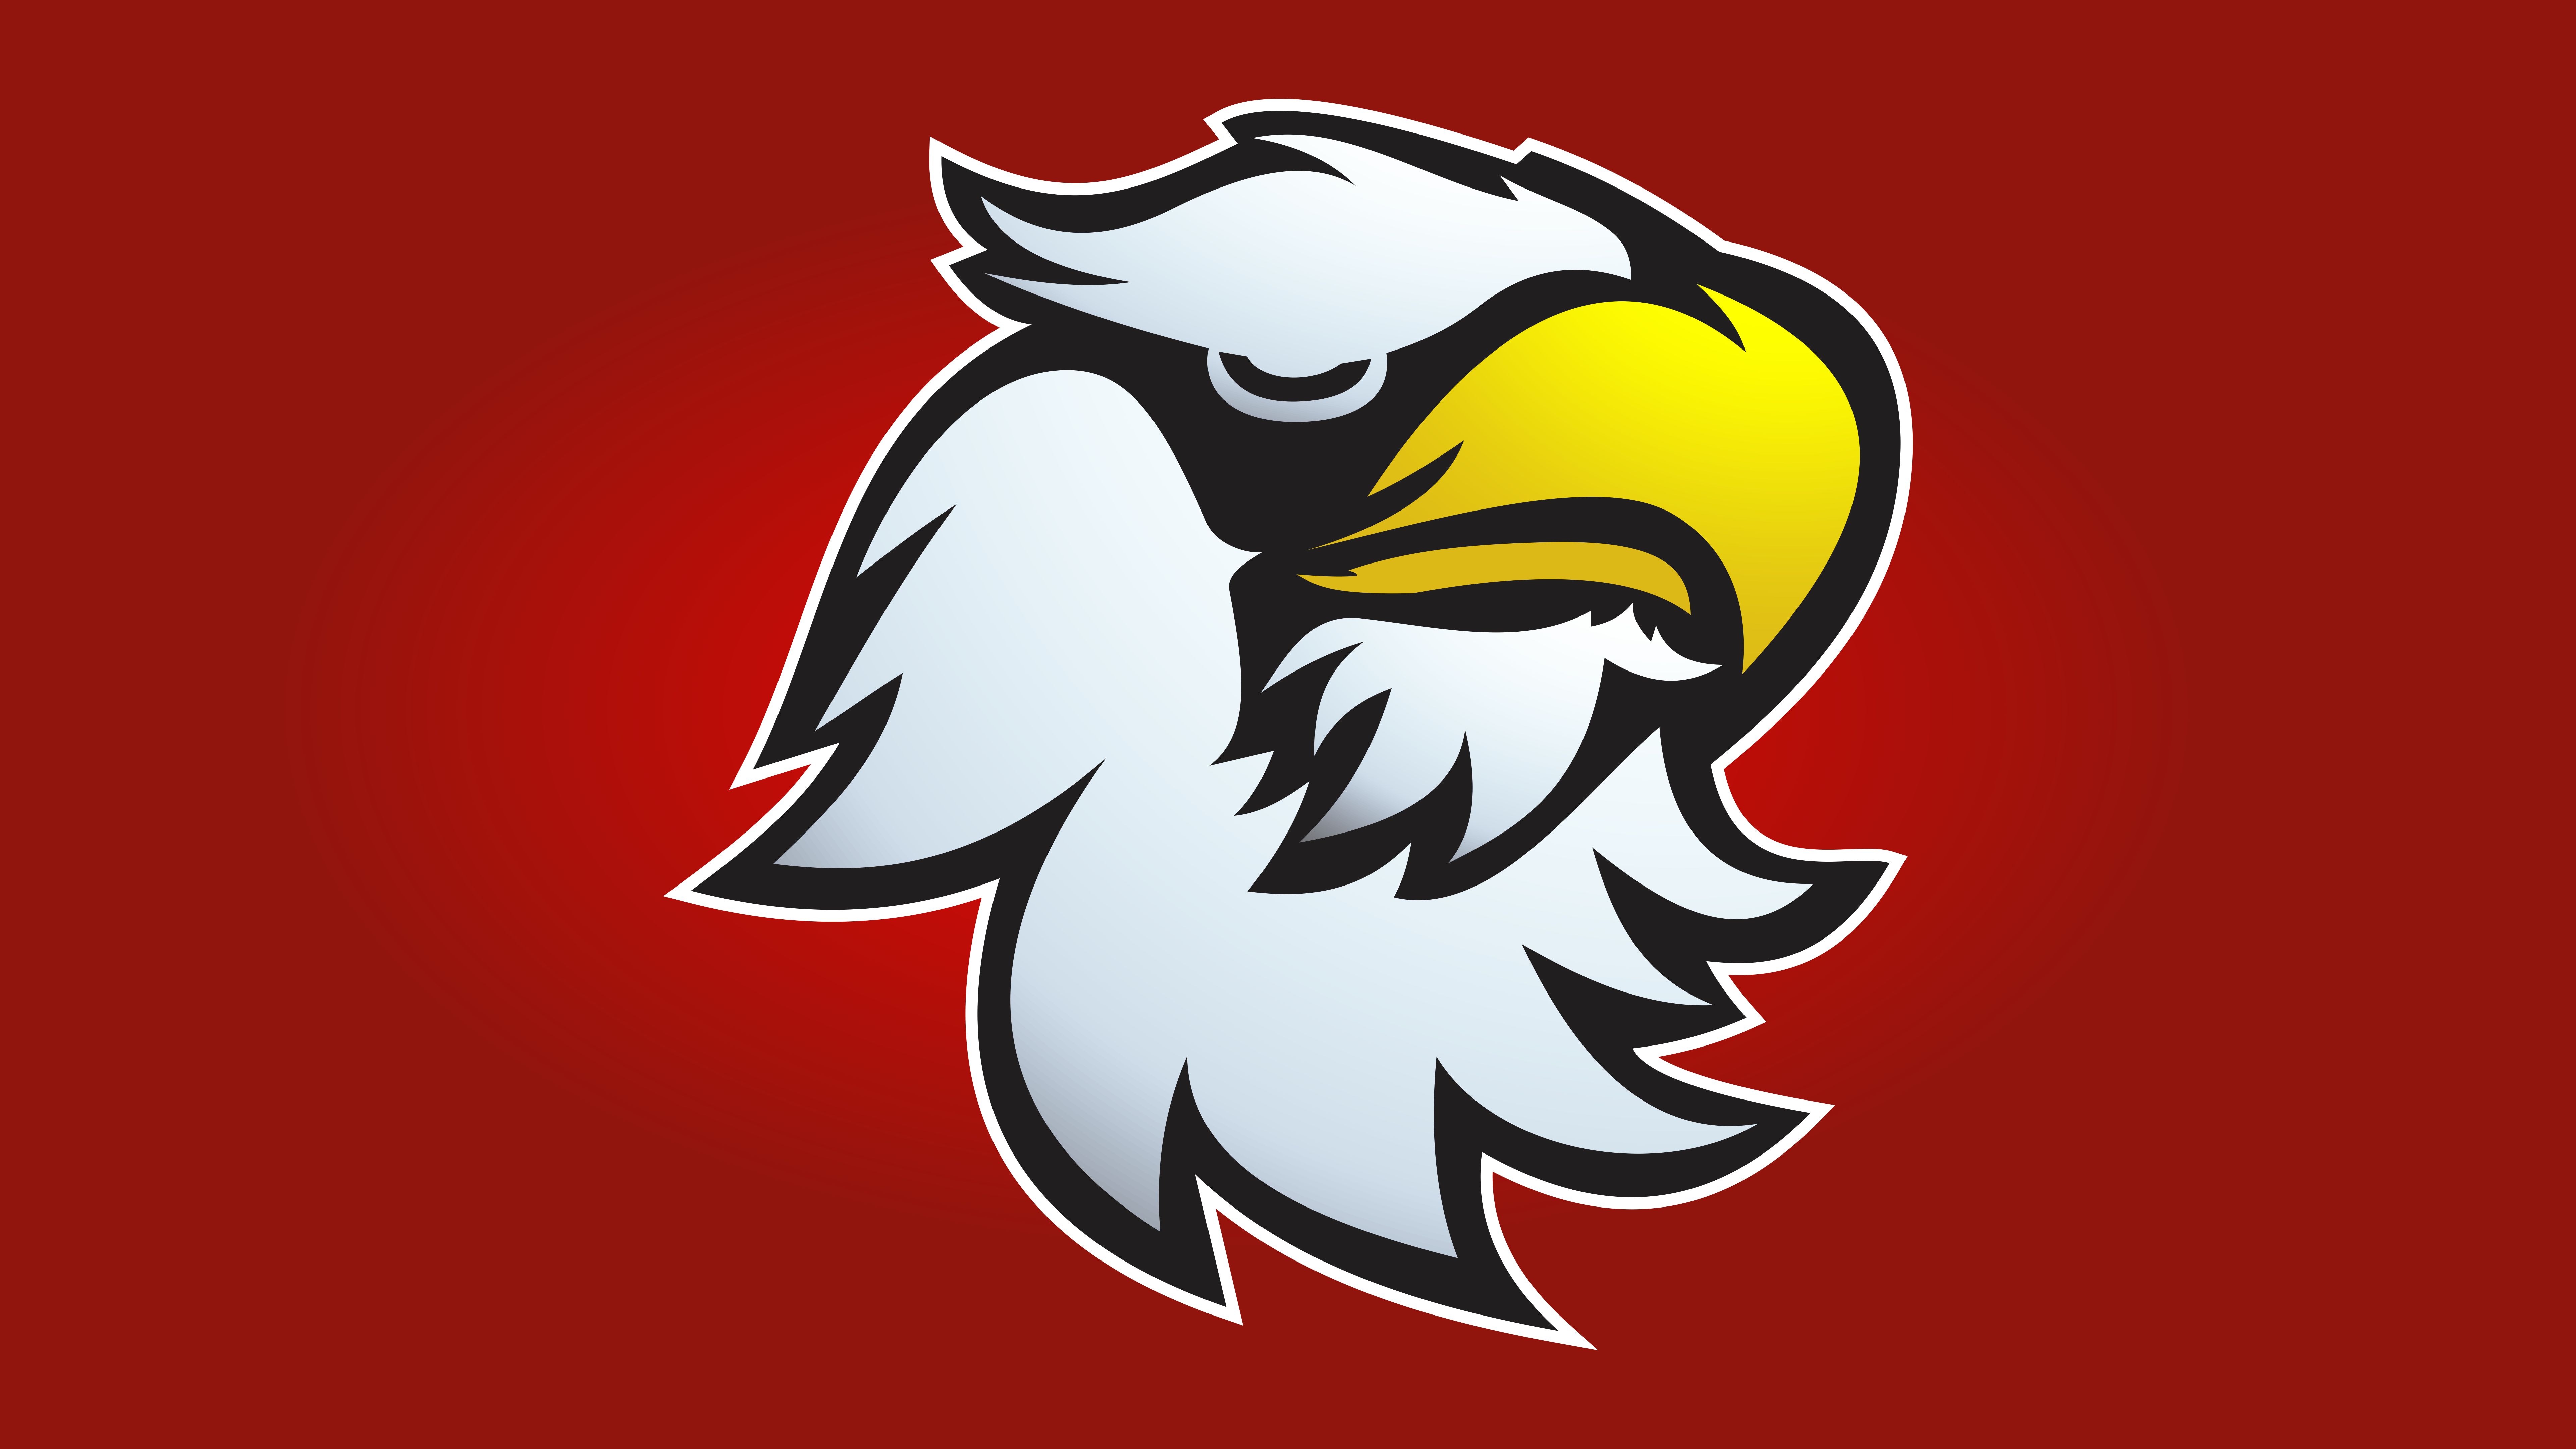 Red Eagle Esports Logo Templates 7068557 Vector Art at Vecteezy